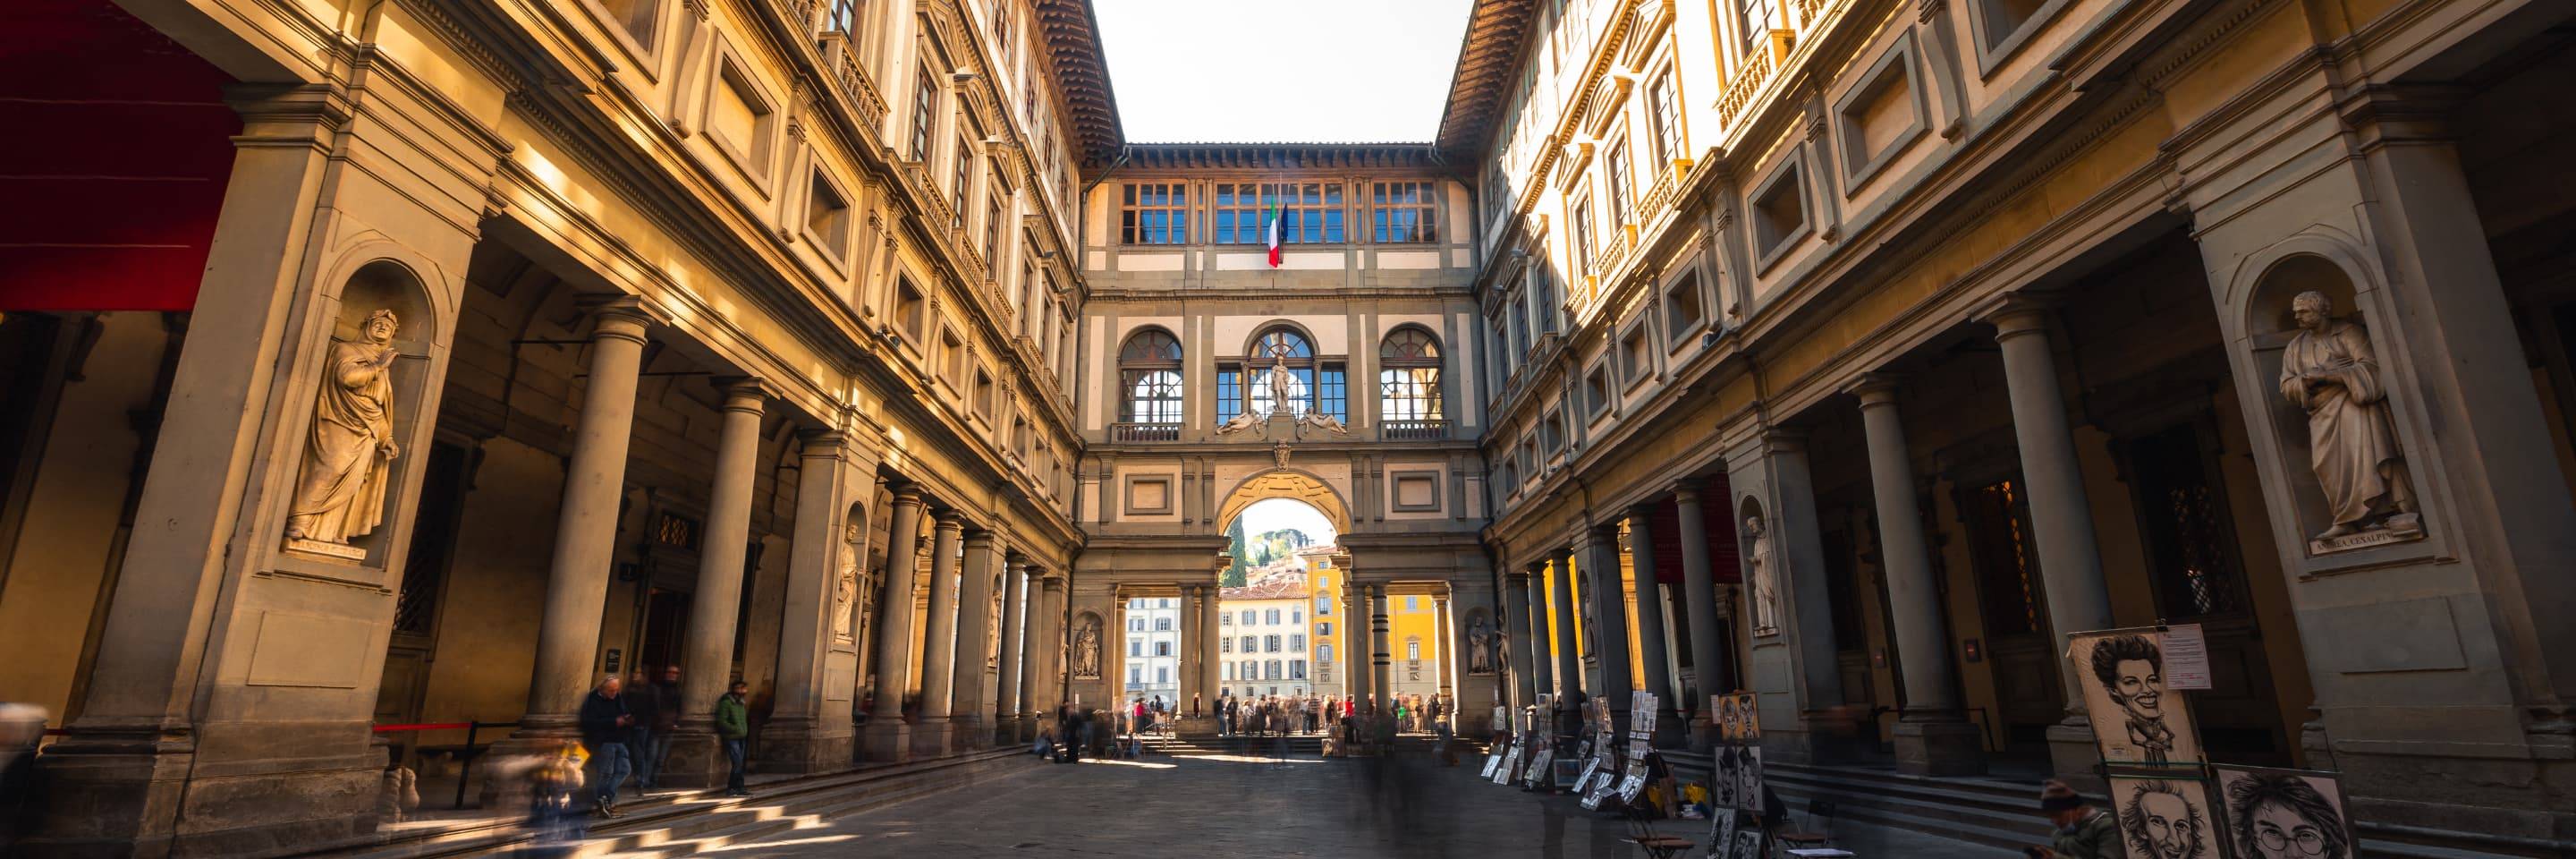 Galería Uffizi: tour guiado con entrada prioritaria en grupos reducidos